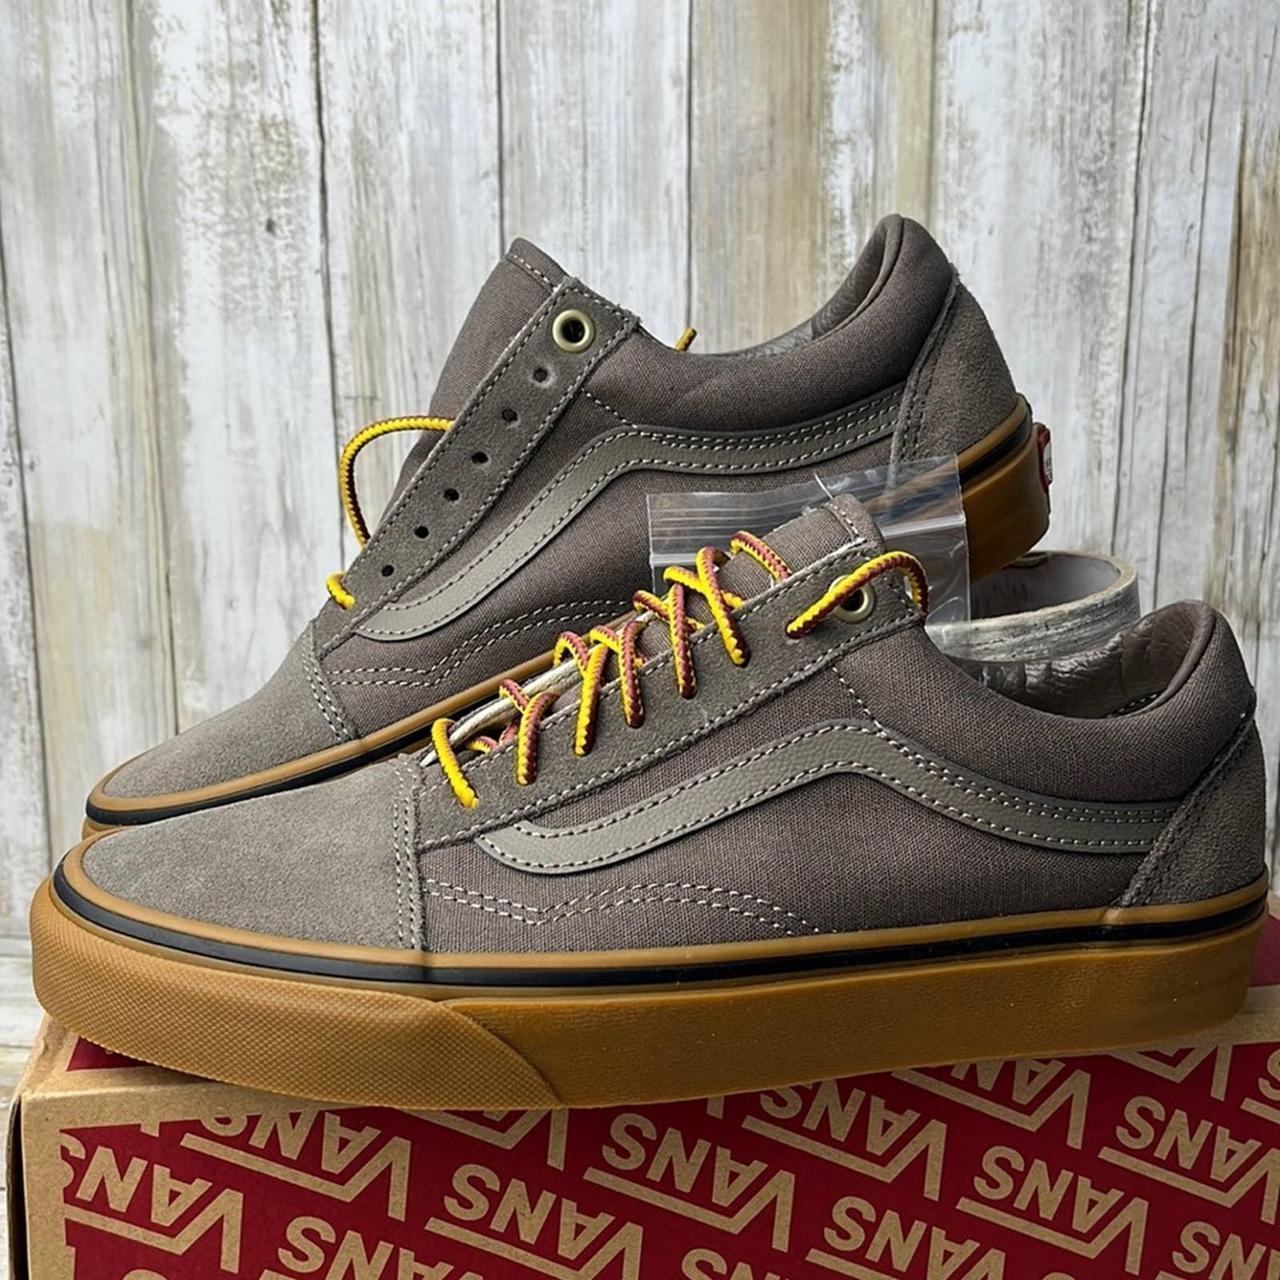 Product Image 1 - Vans Old Skool Gumsole Sneaker

Brand